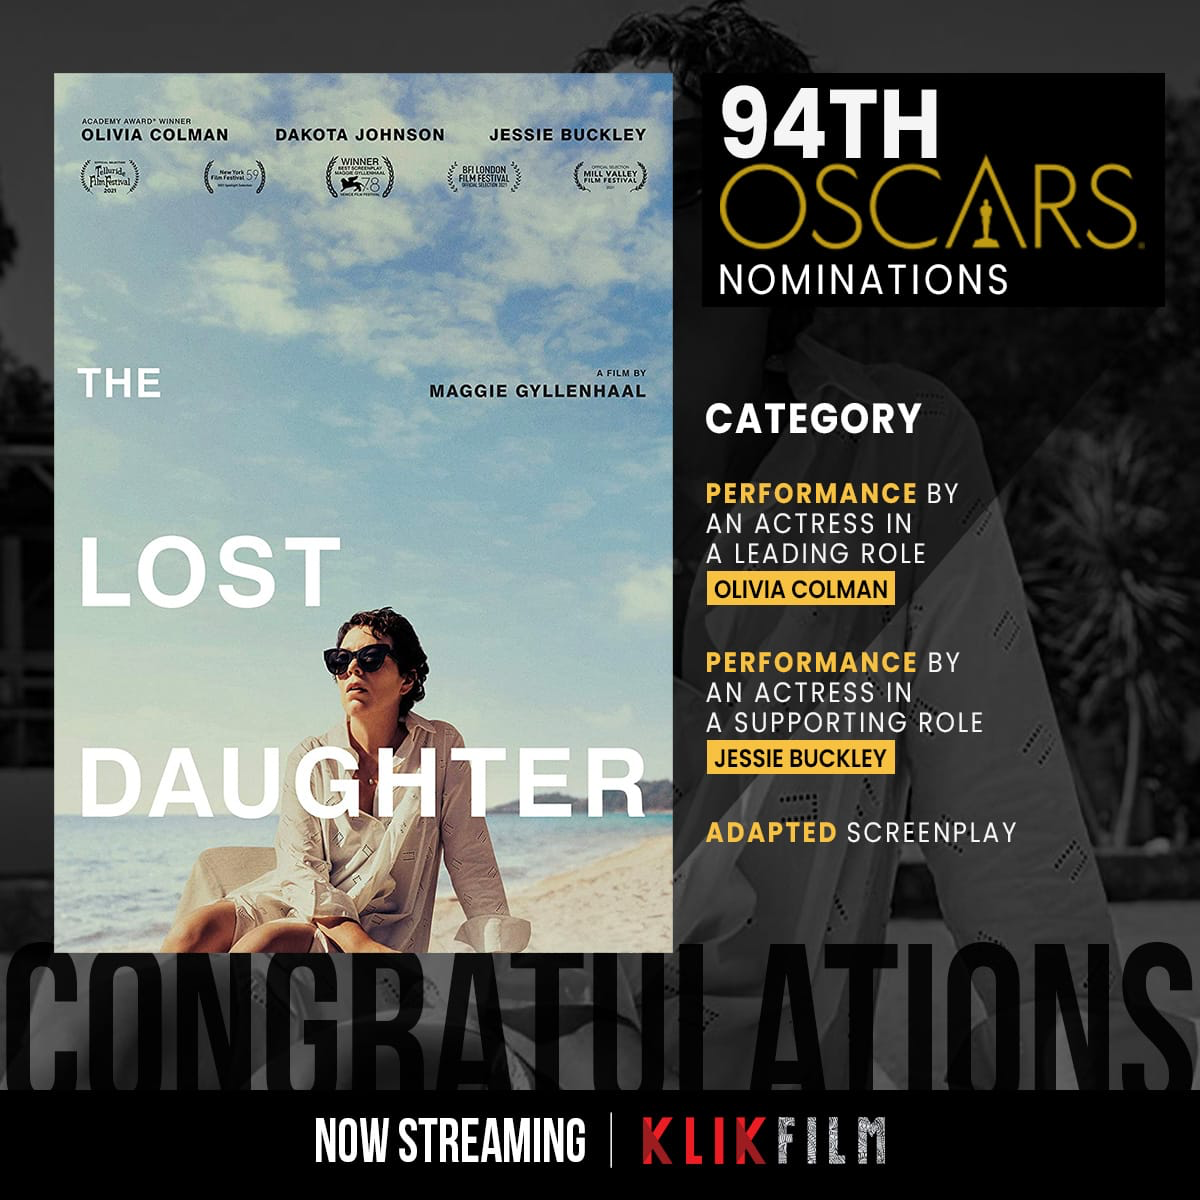 Film Kristen Stewart &amp; 3 Film Nominasi Oscar 2022 Lainnya, Tayang Februari Ini!